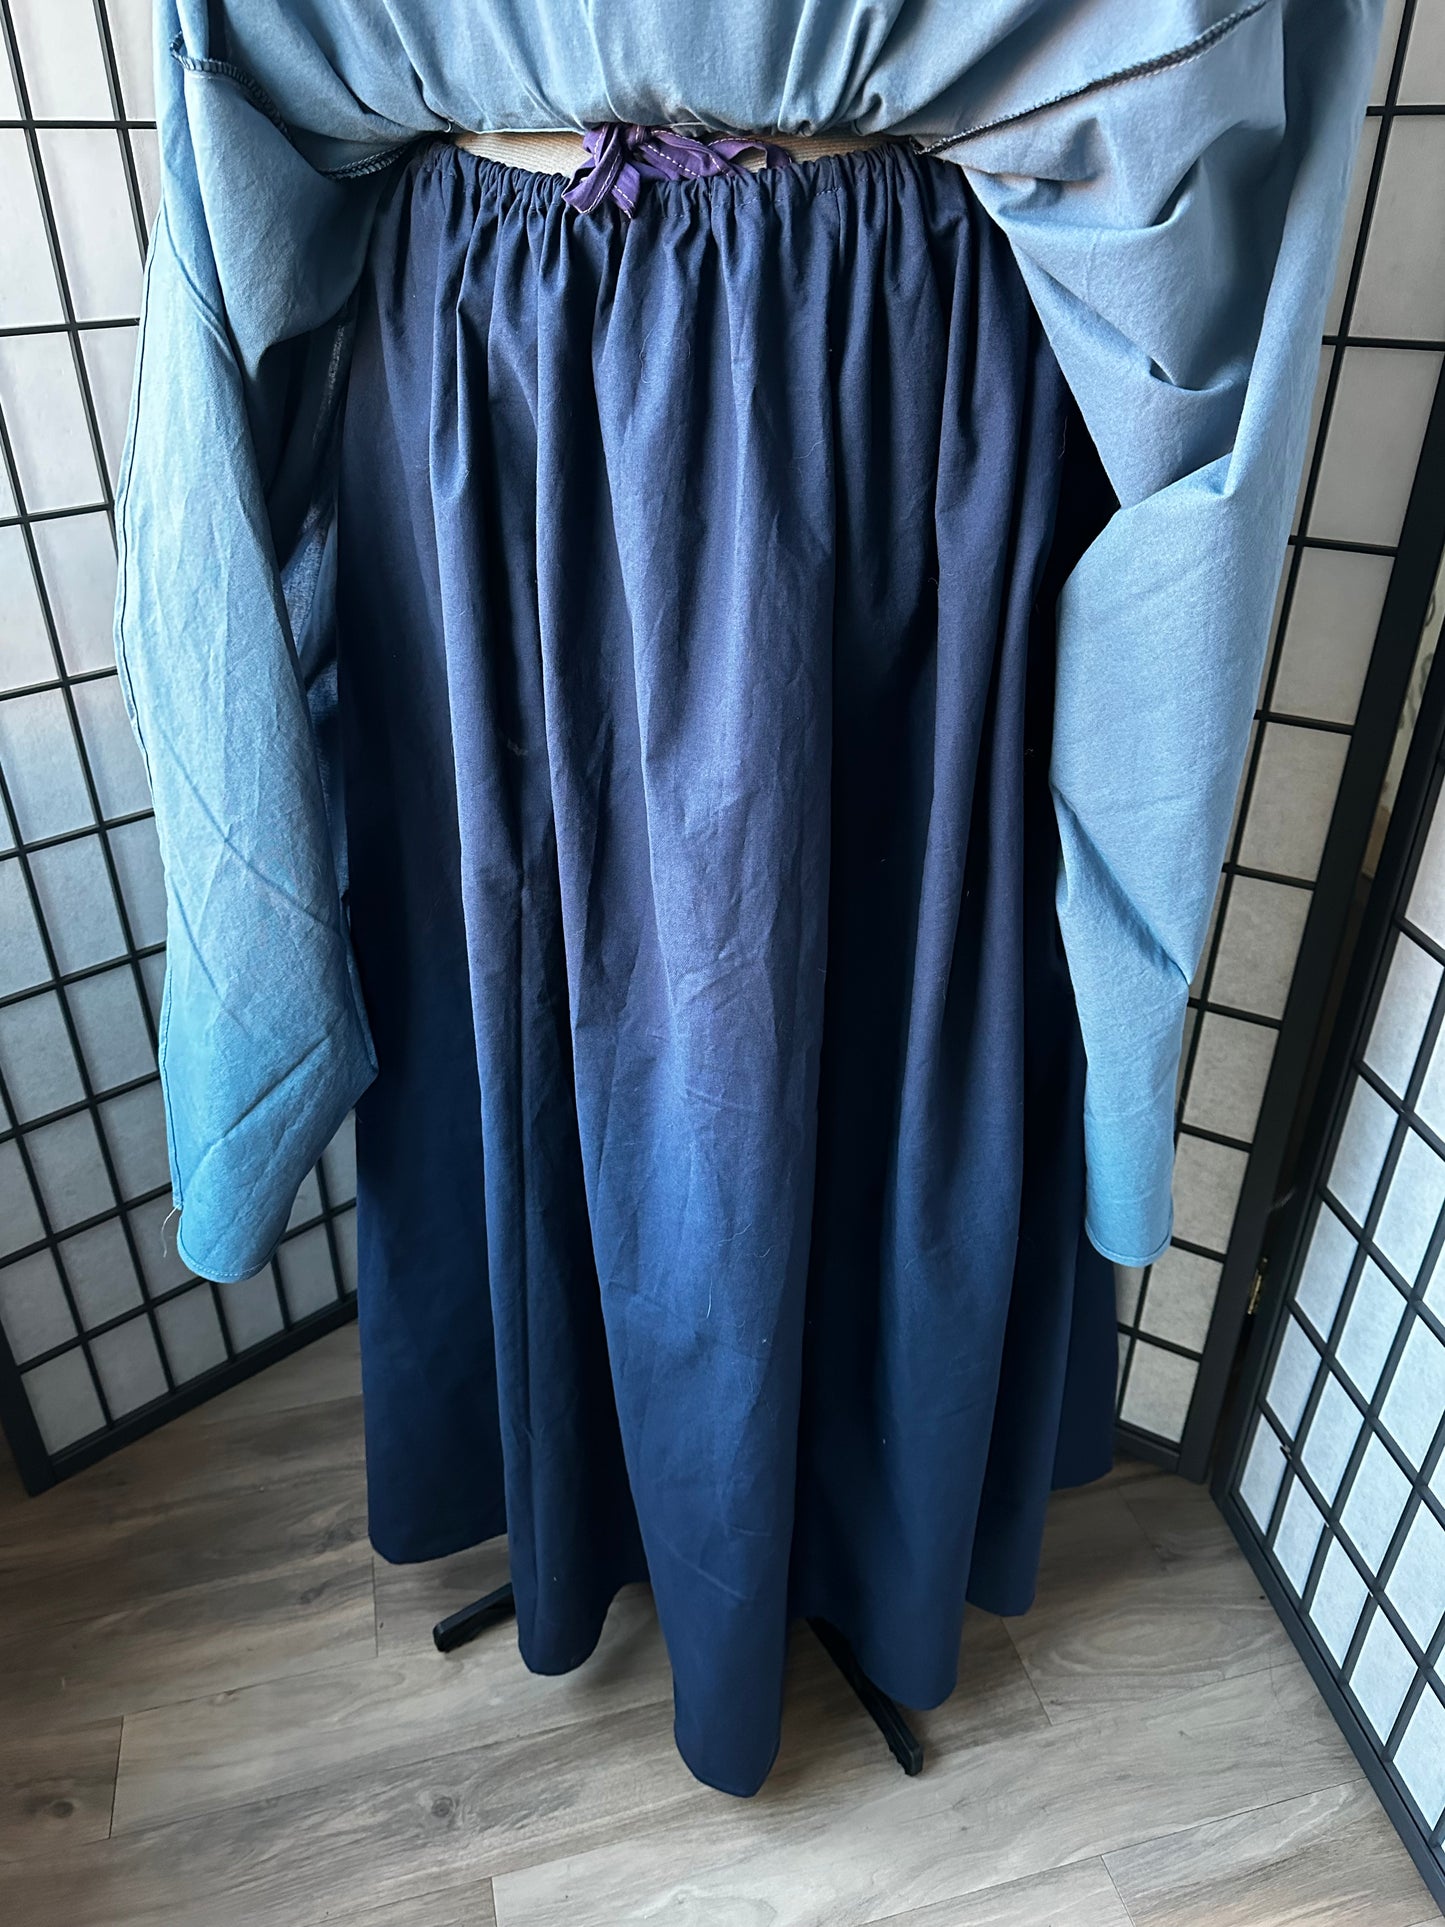 A-Line Full Skirt (Custom Order)